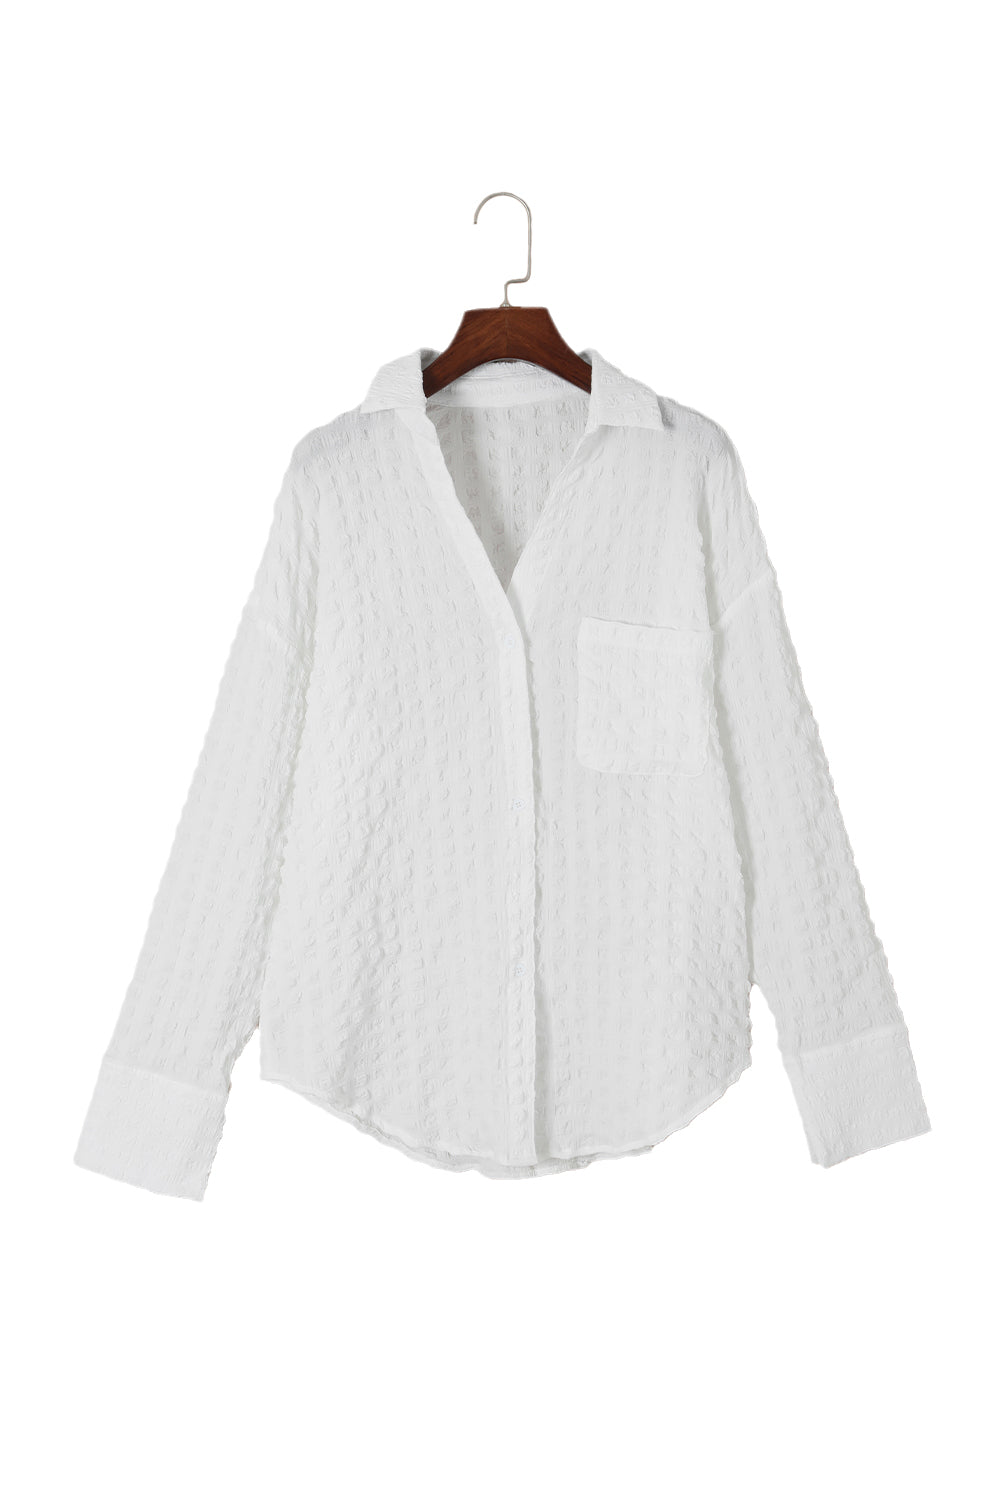 White Crinkled Plaid Textured Shirt-17